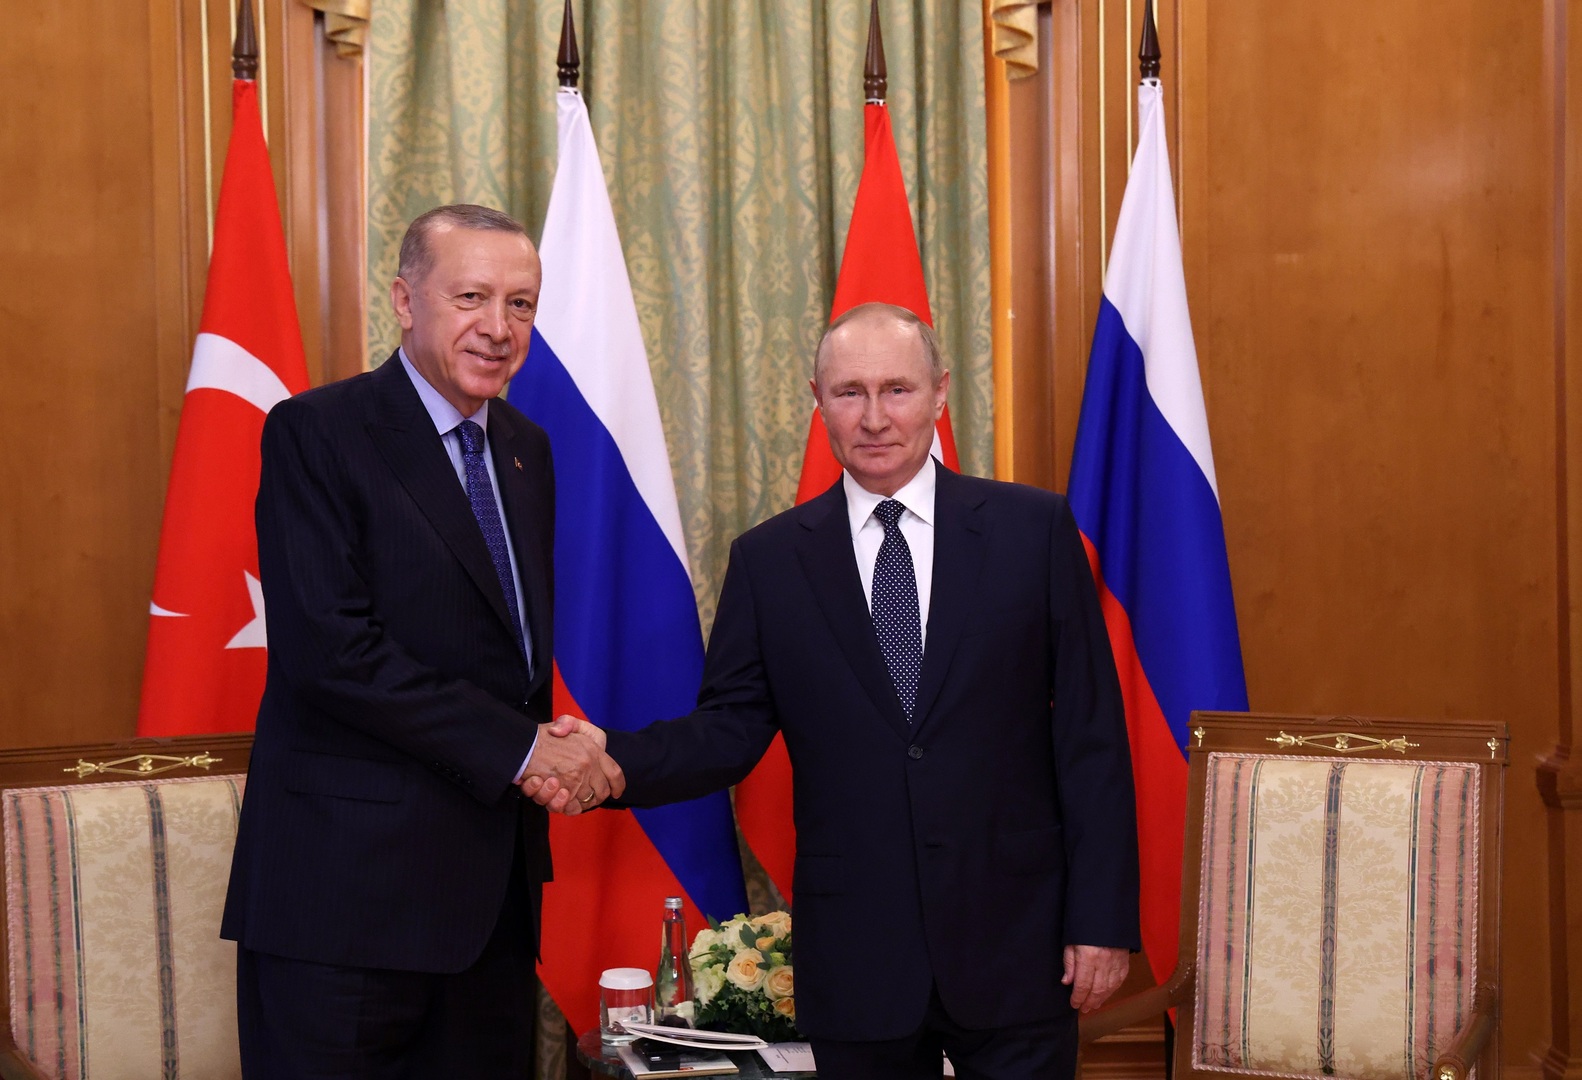 نوفاك: بوتين وأردوغان اتفقا على شراء تركيا لجزء من الغاز الروسي بالروبل